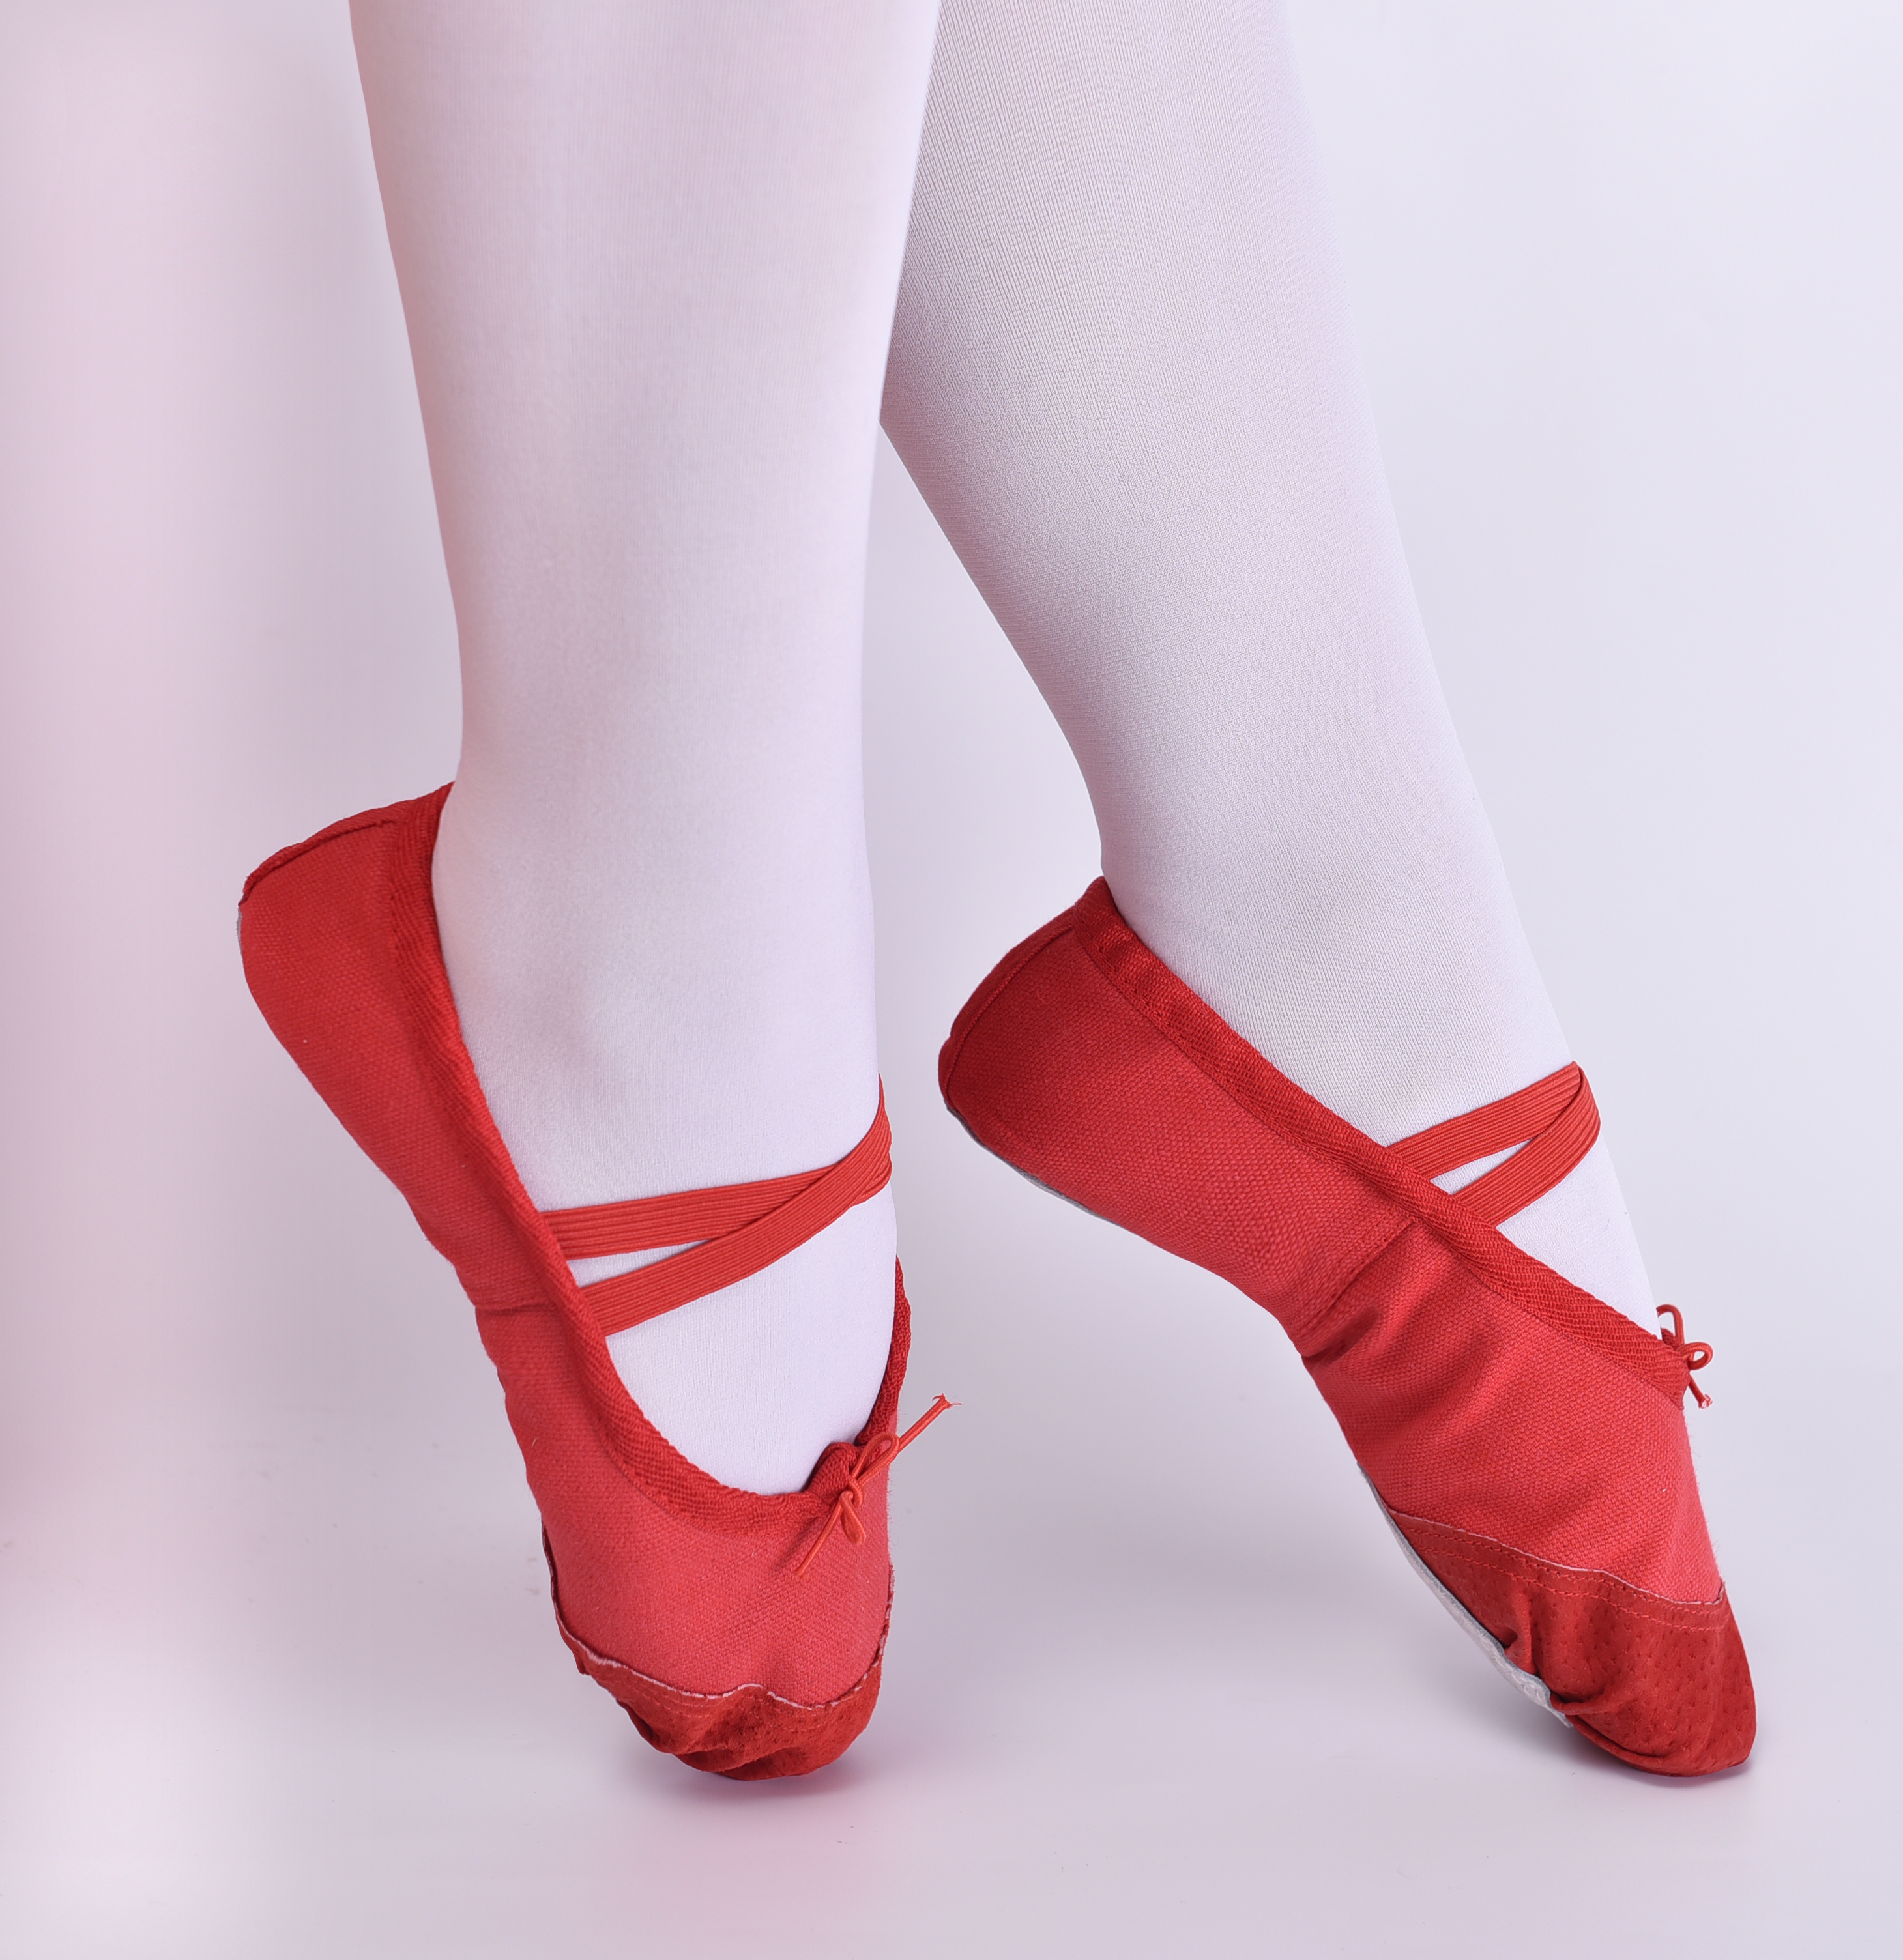 芭蕾舞鞋重回时尚舞台 Miu Miu这款满满少女心_凤凰时尚